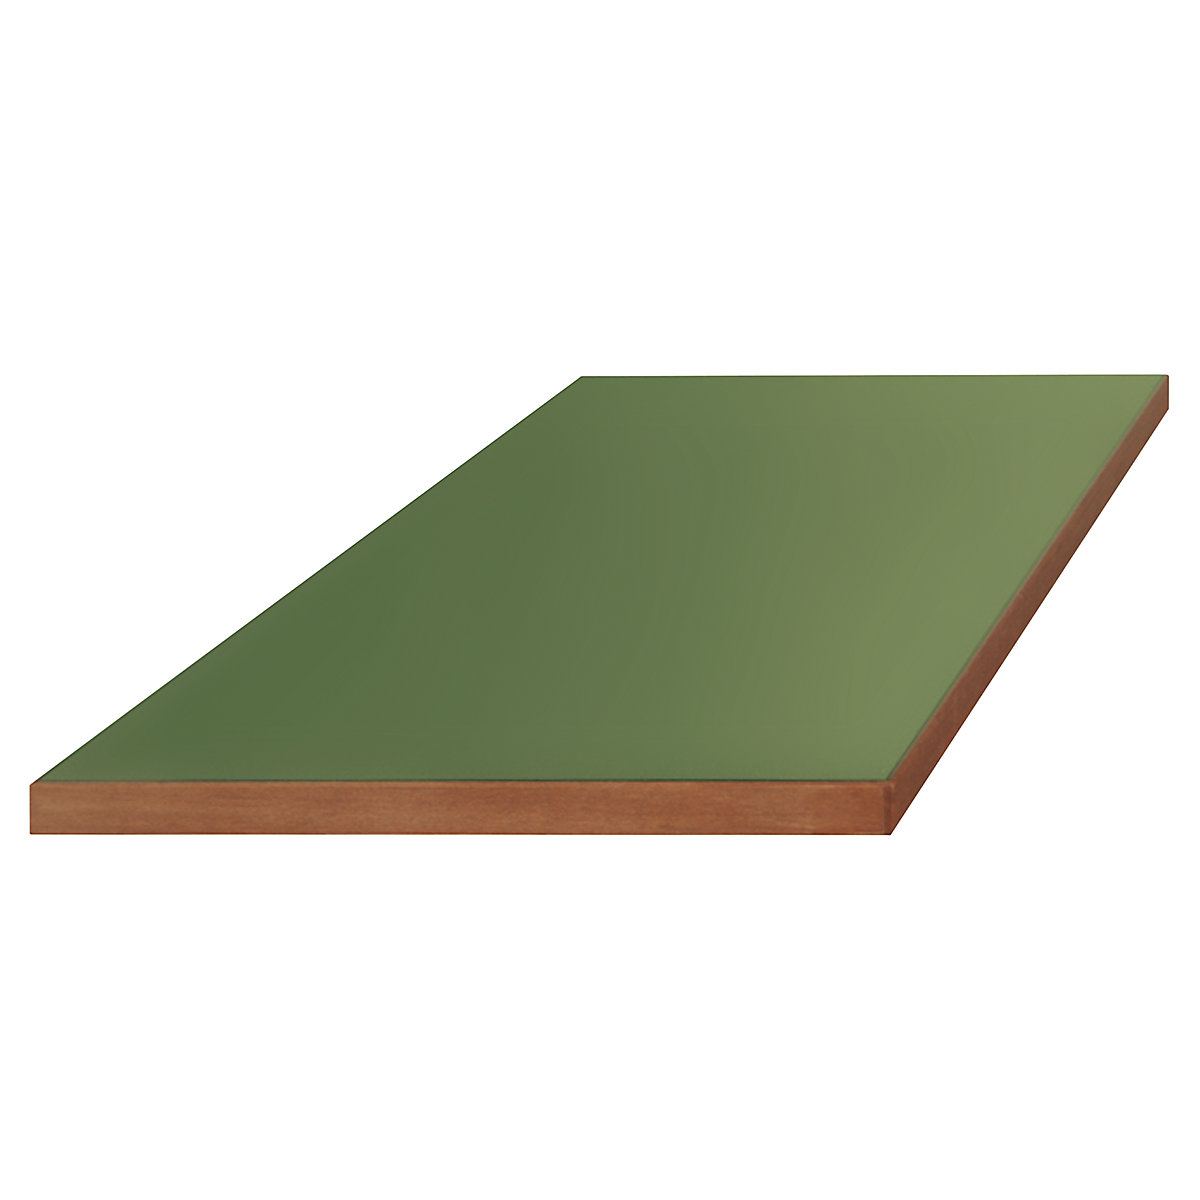 Plateau pour établis modulaires – LISTA, revêtement Urphen sur base en bois, l x p 1500 x 750 mm, épaisseur 50 mm-8